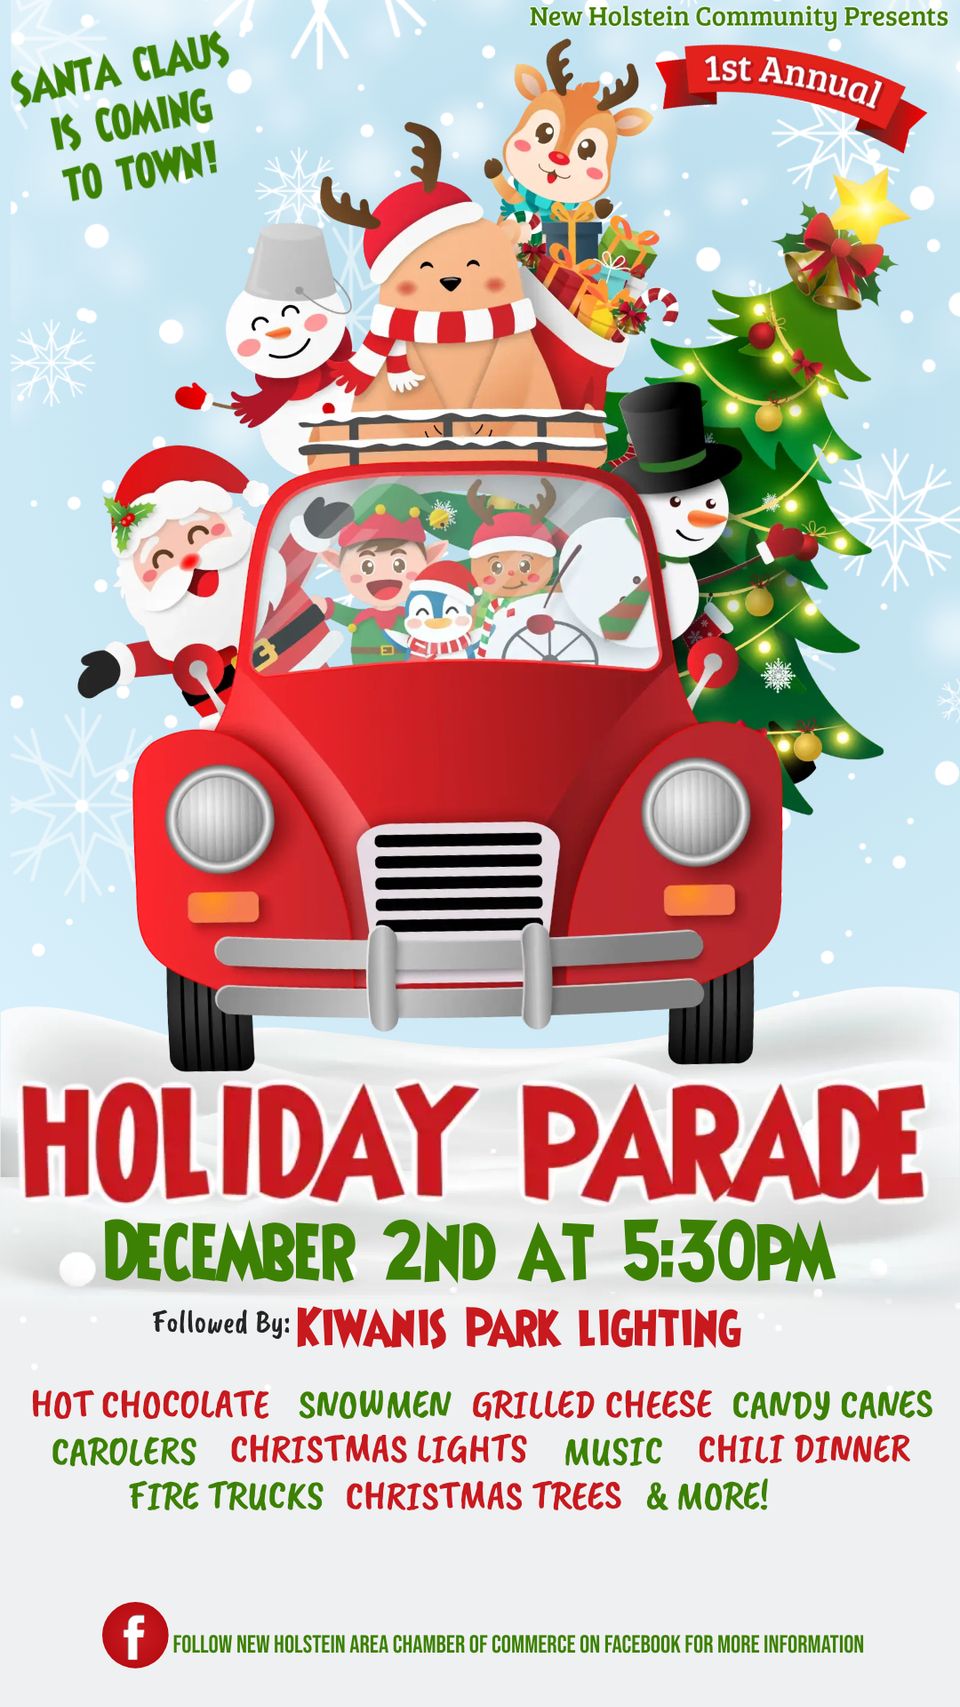 Nh holiday parade poster